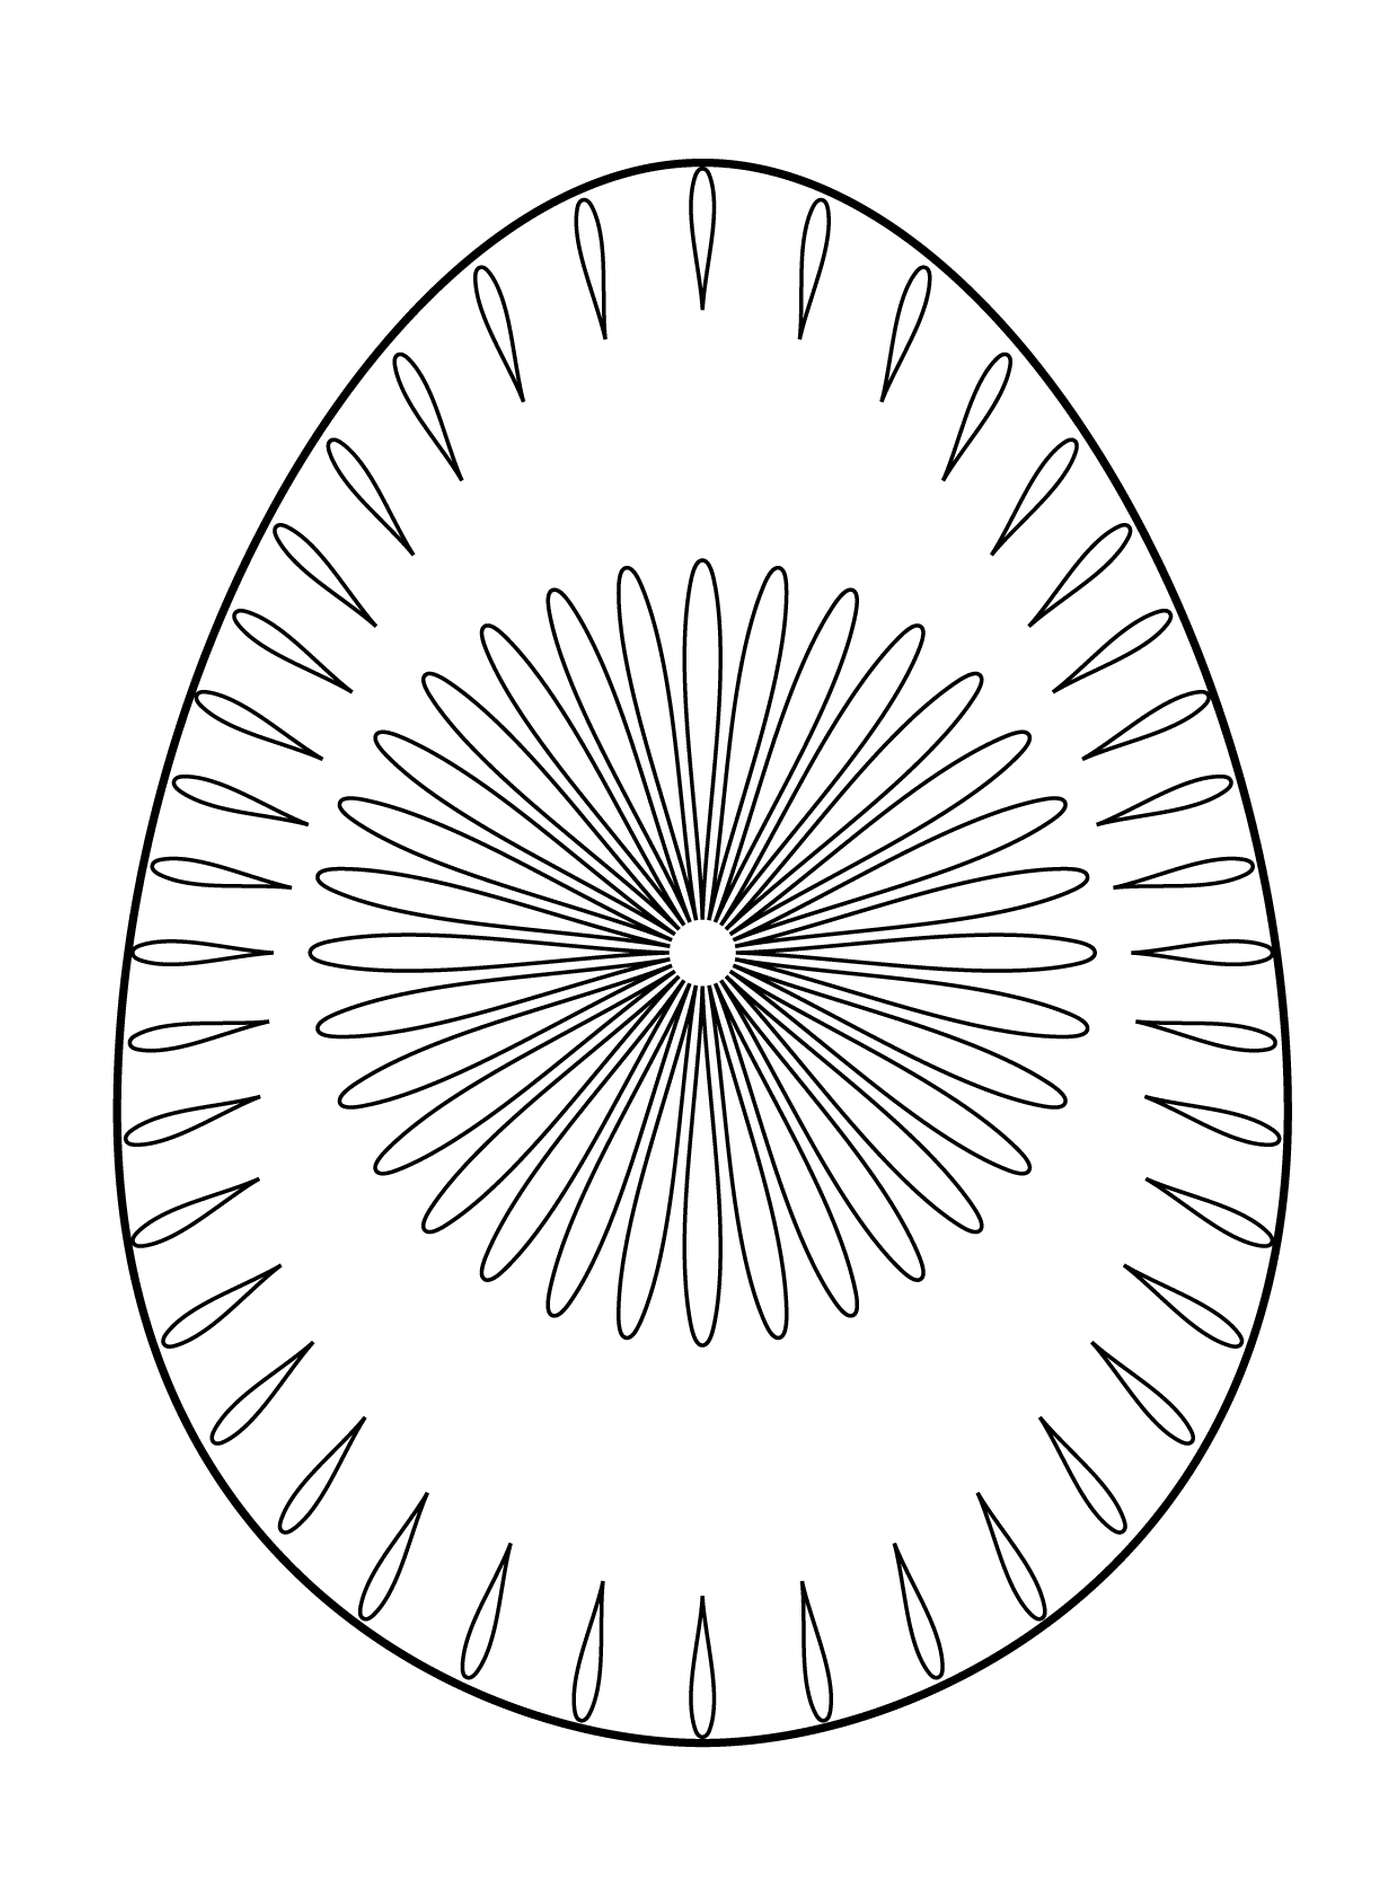  Ovo de Páscoa com padrão de flor 2, um ovo com um padrão circular 